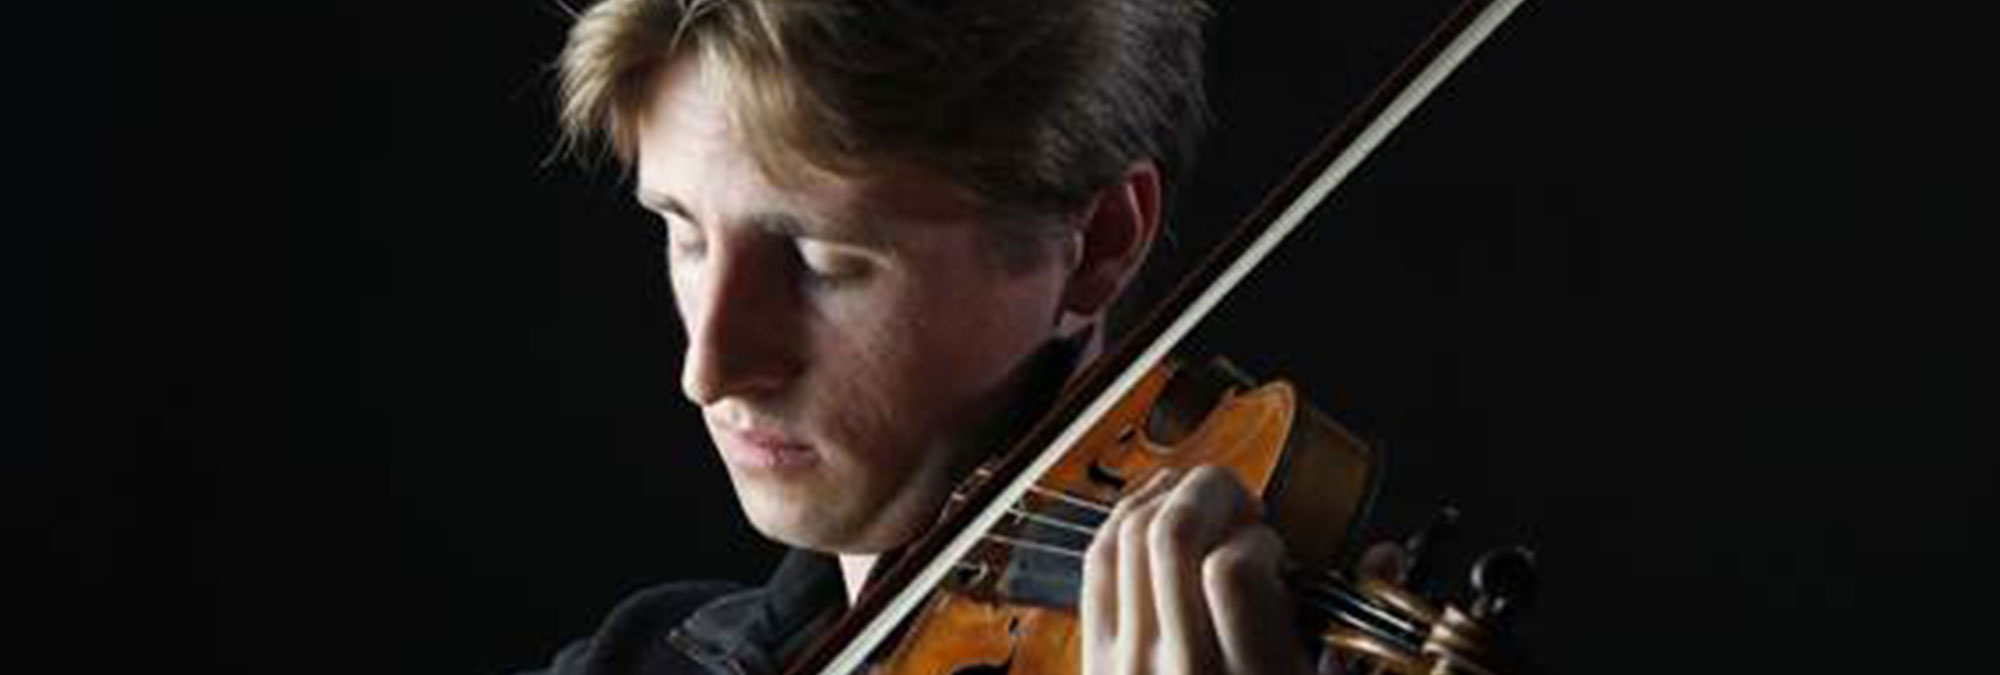 David McCaroll playing his violin